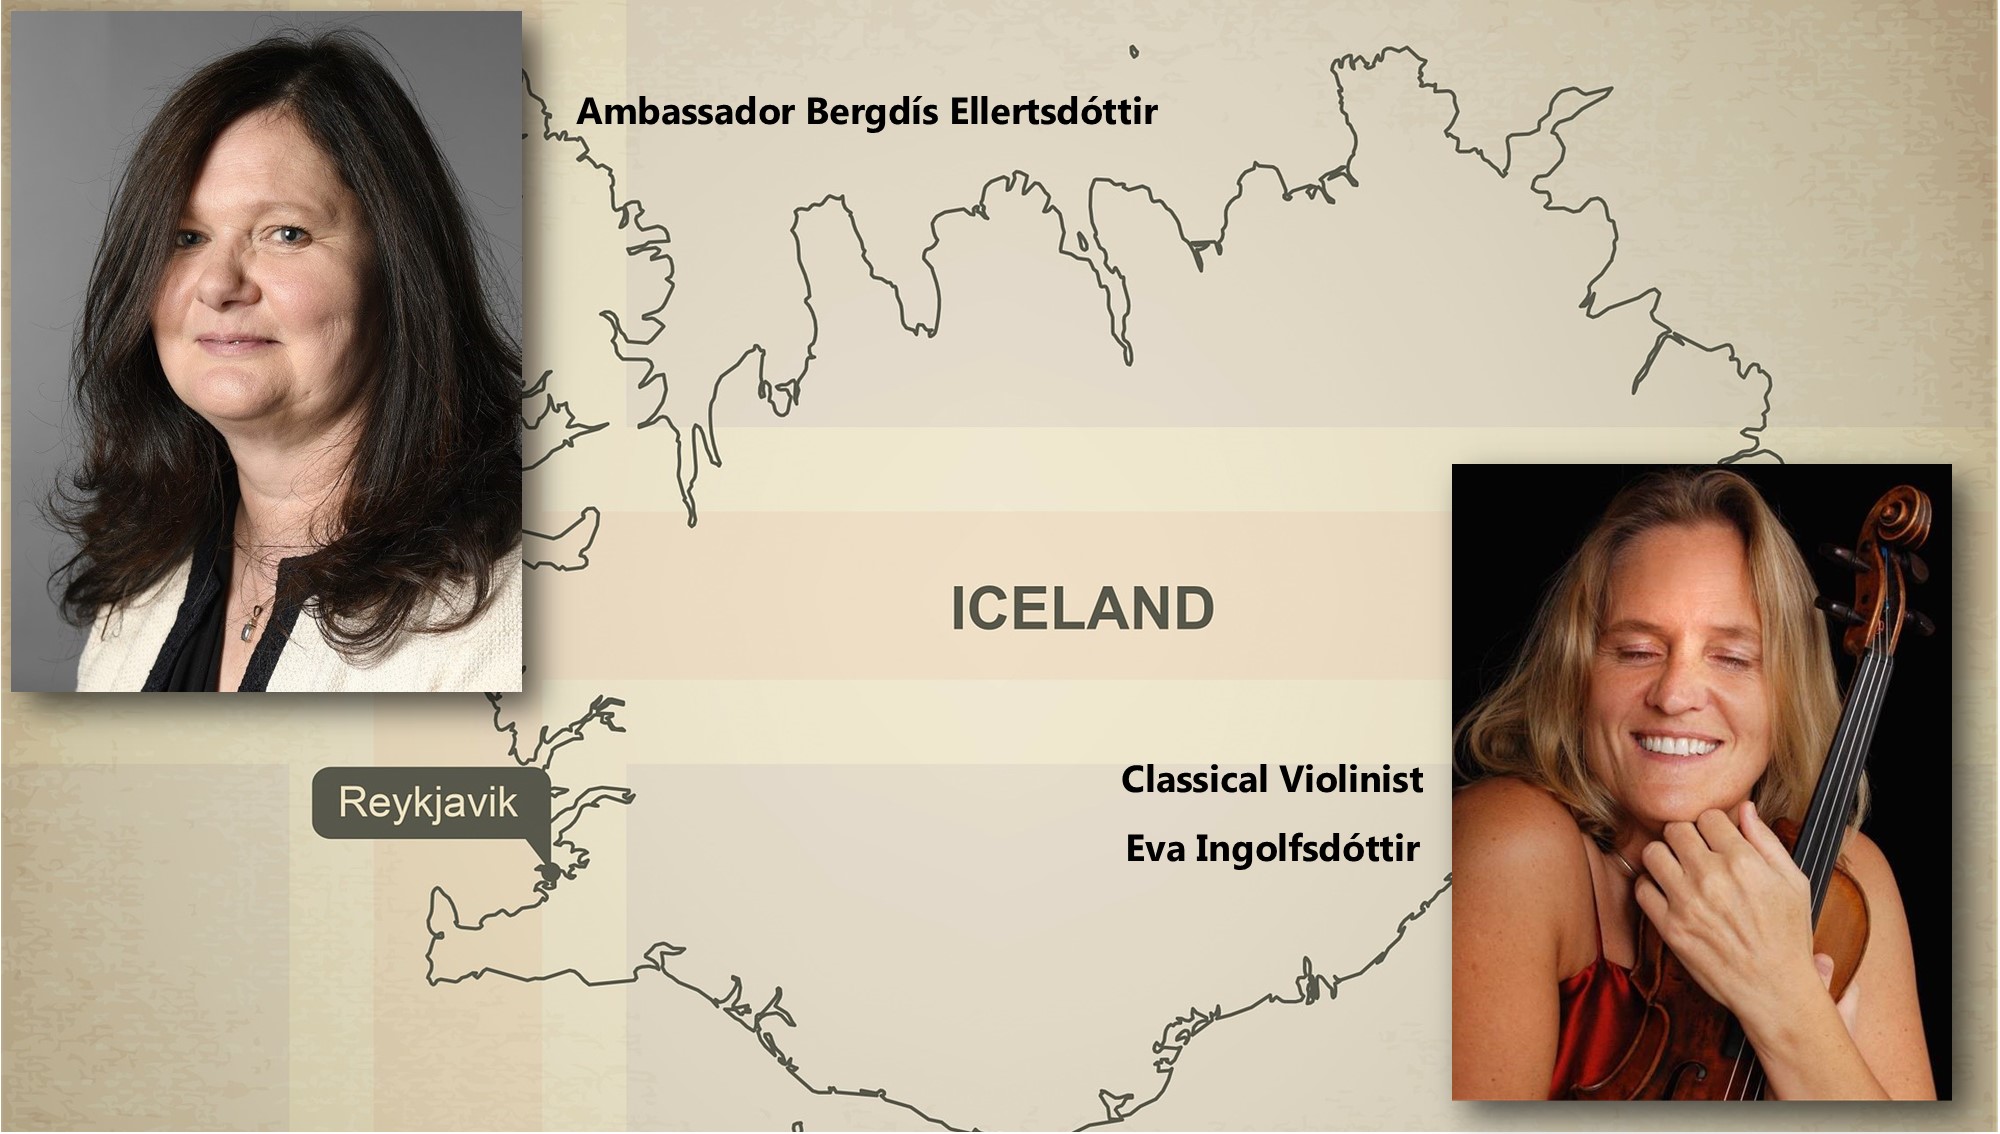 Icelandic Ambassador and Violinist Visit, March 29 image